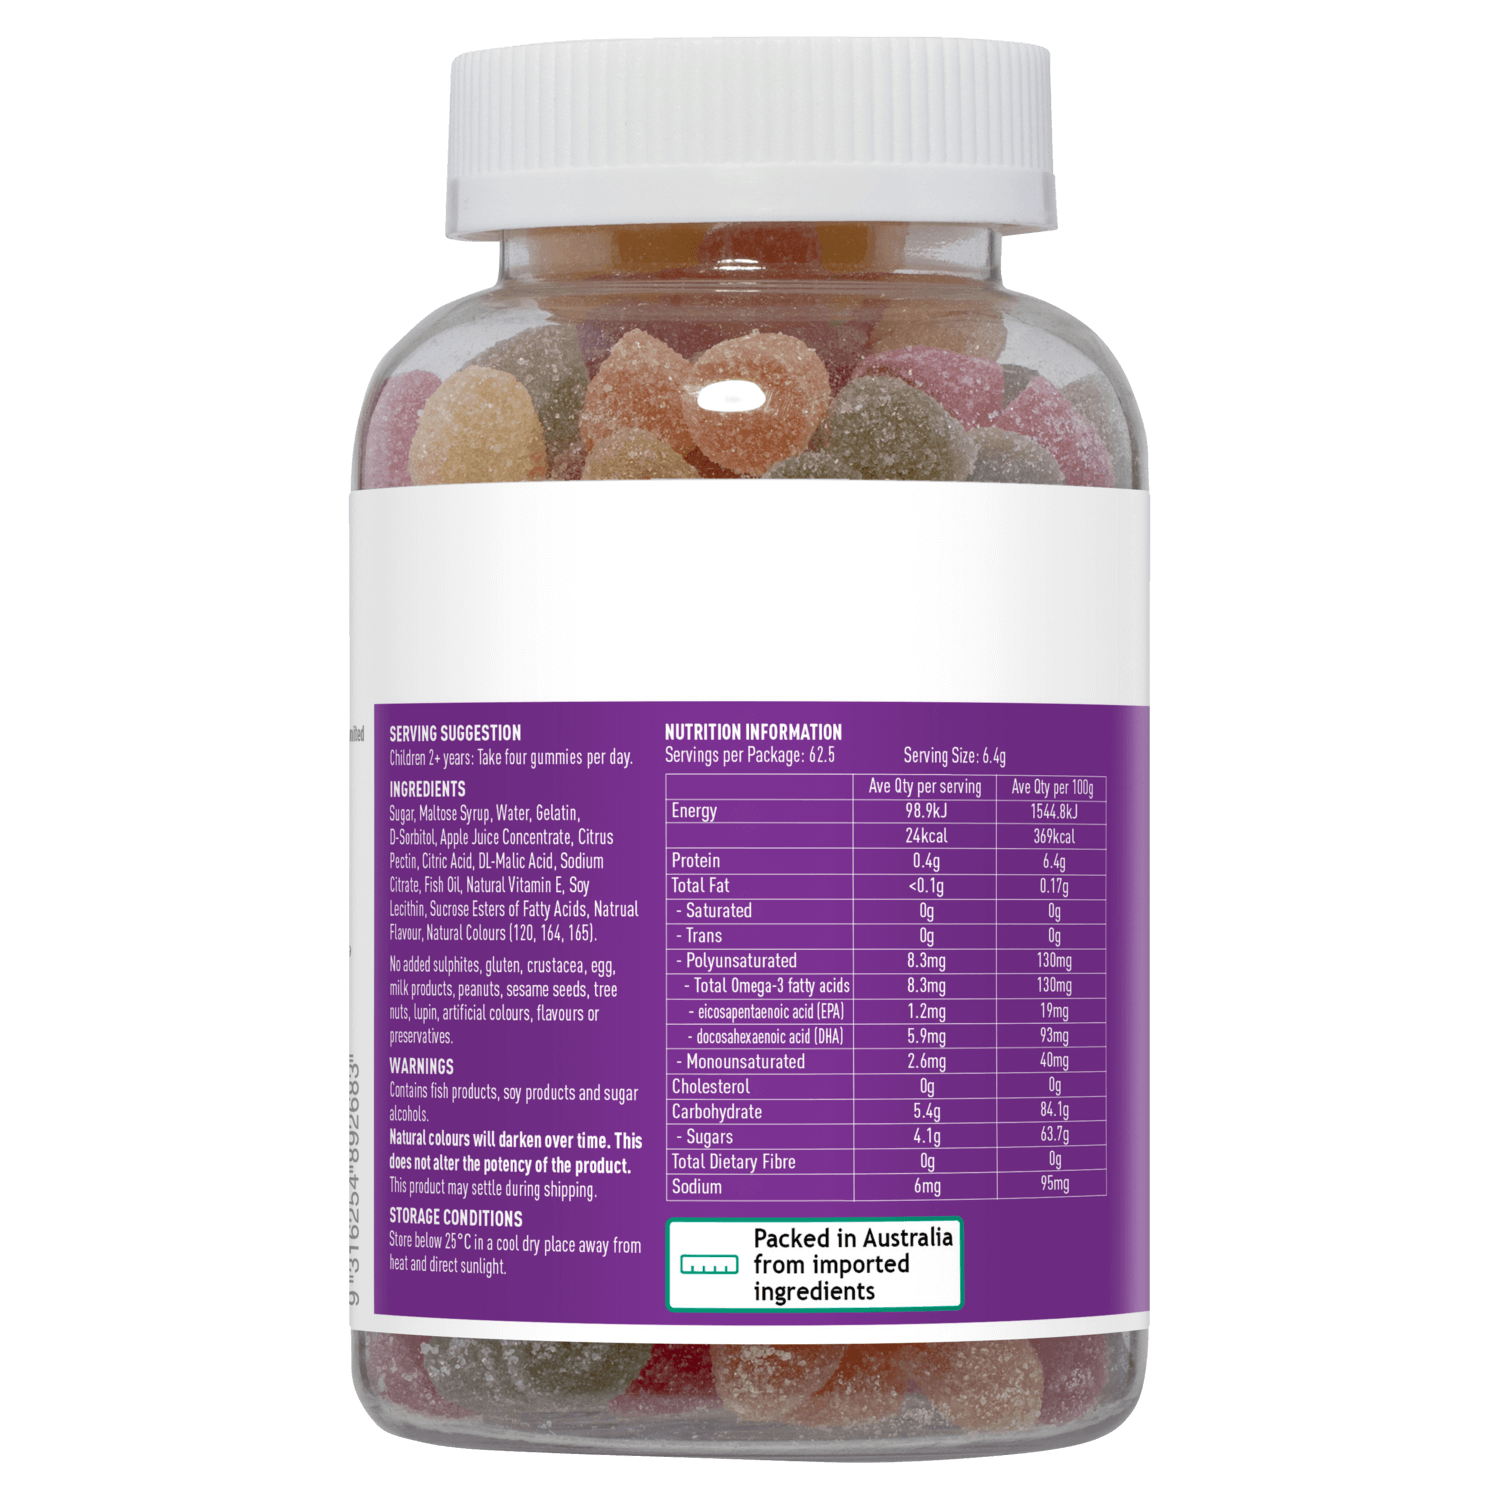 Omega-3 Úc Cho Bé Healthy Care Gummy Omega-3 Dạng Kẹo Dẻo Giúp Phát Triển Não Bộ Tăng Khả Năng Nhận Thức, Tập Trung Và Ghi Nhớ Tăng Hệ Miễn Dịch, Bổ Cho Tim Và Mắt – Hộp 250 Viên